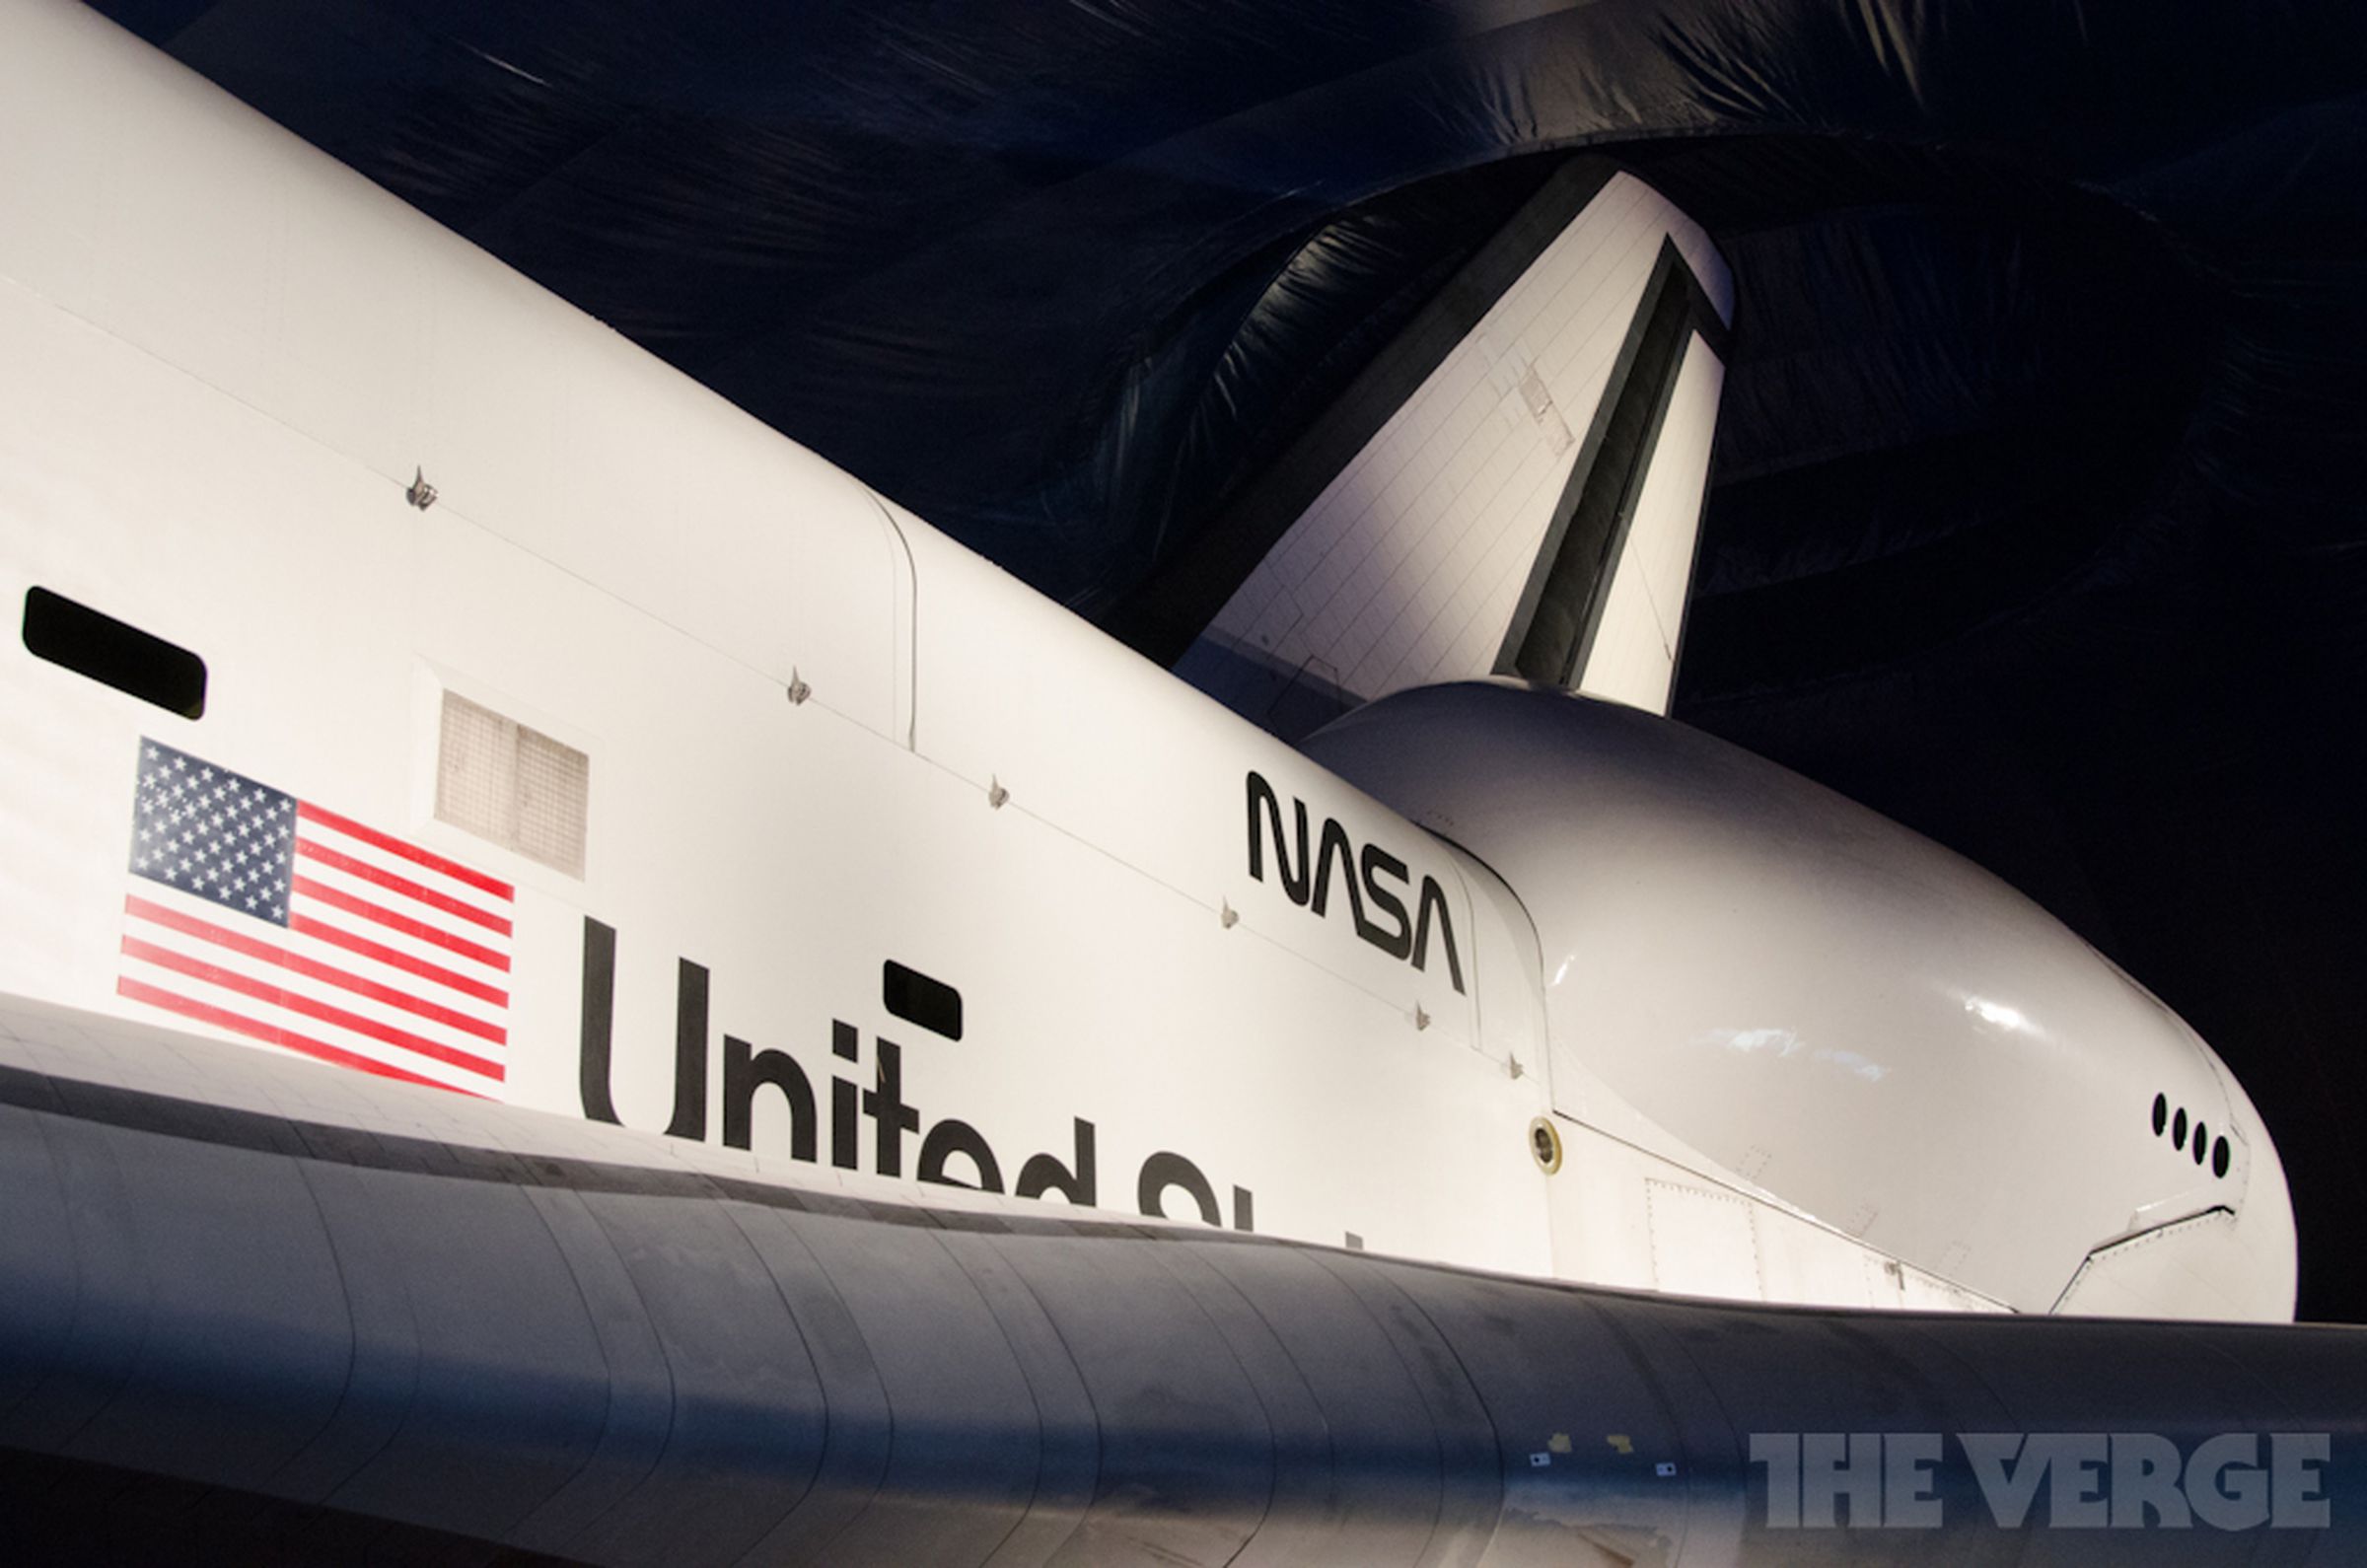 NASA Space Shuttle Enterprise photos